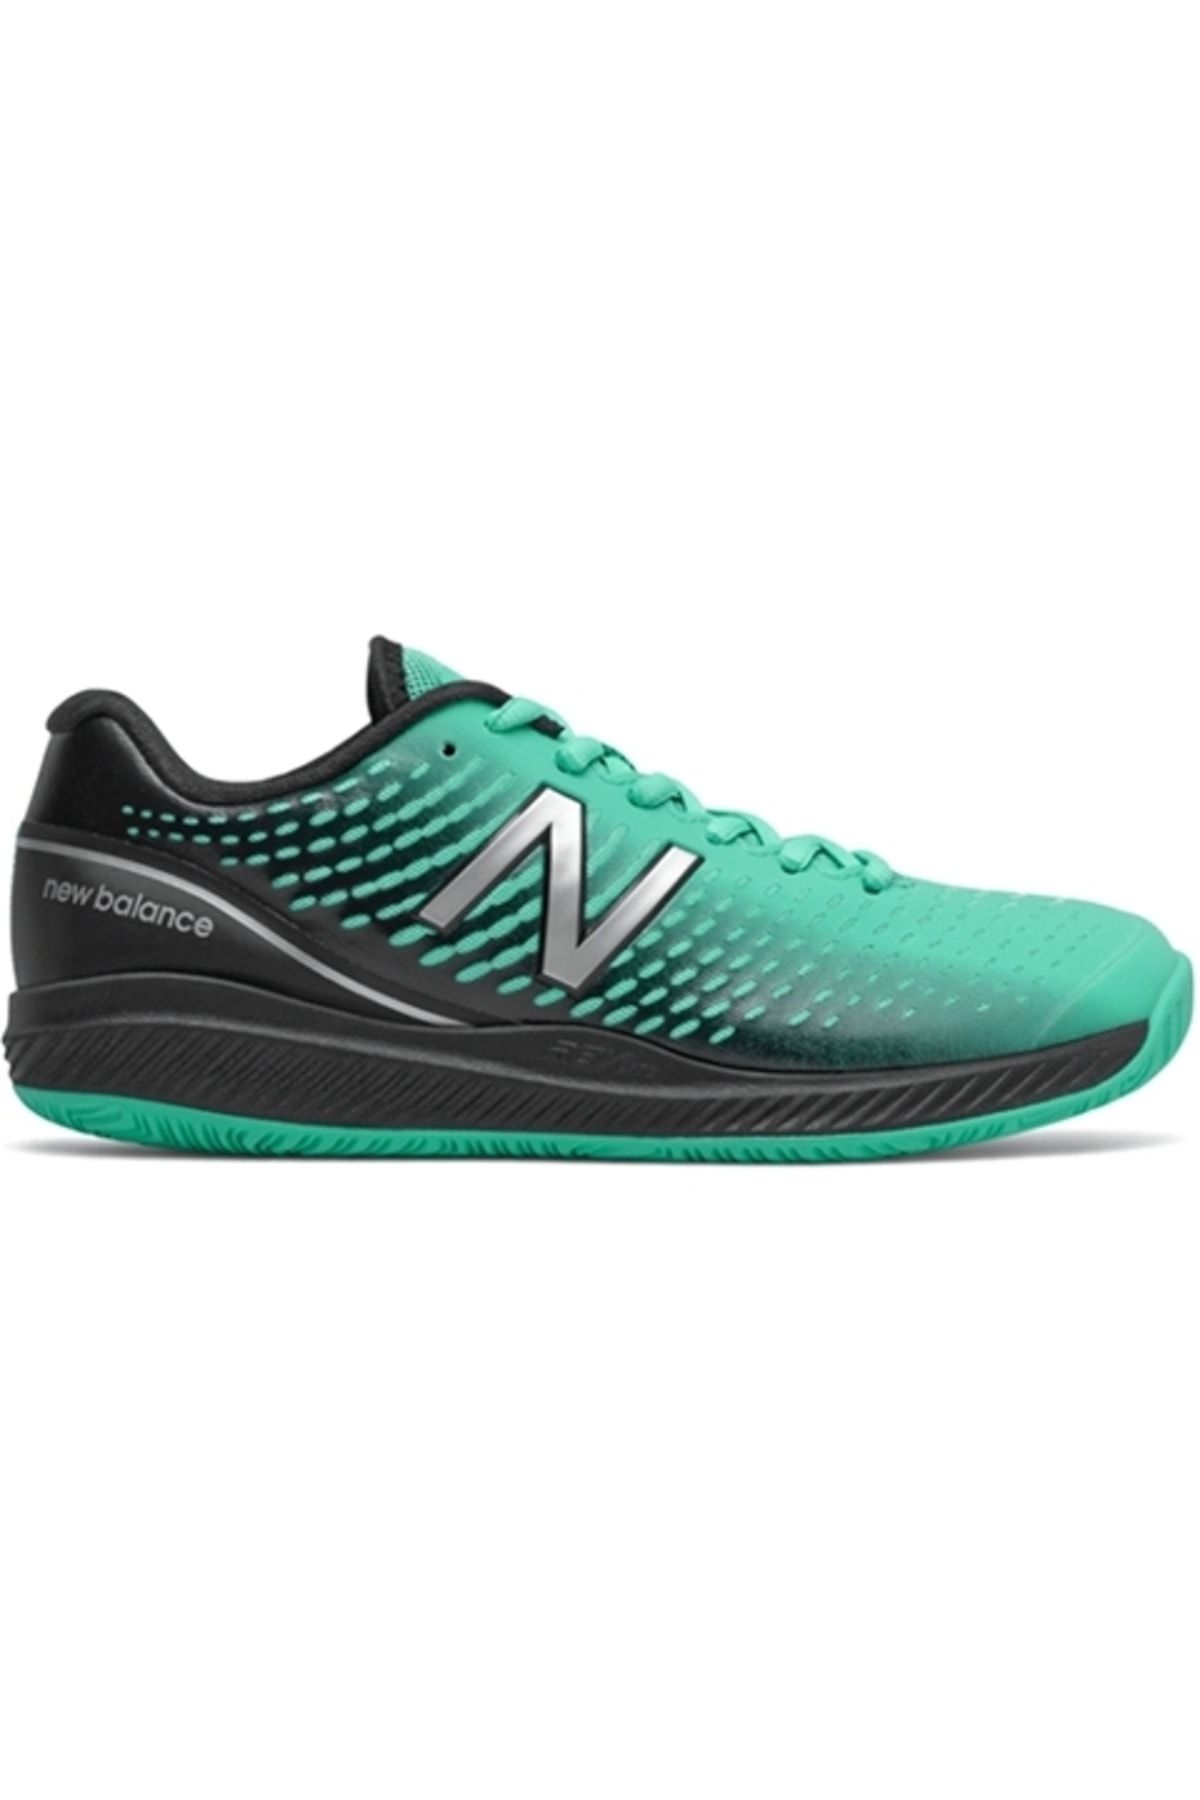 New Balance 796v2 Yeşil Kadın Tenis Ayakkabısı - Wch796r2